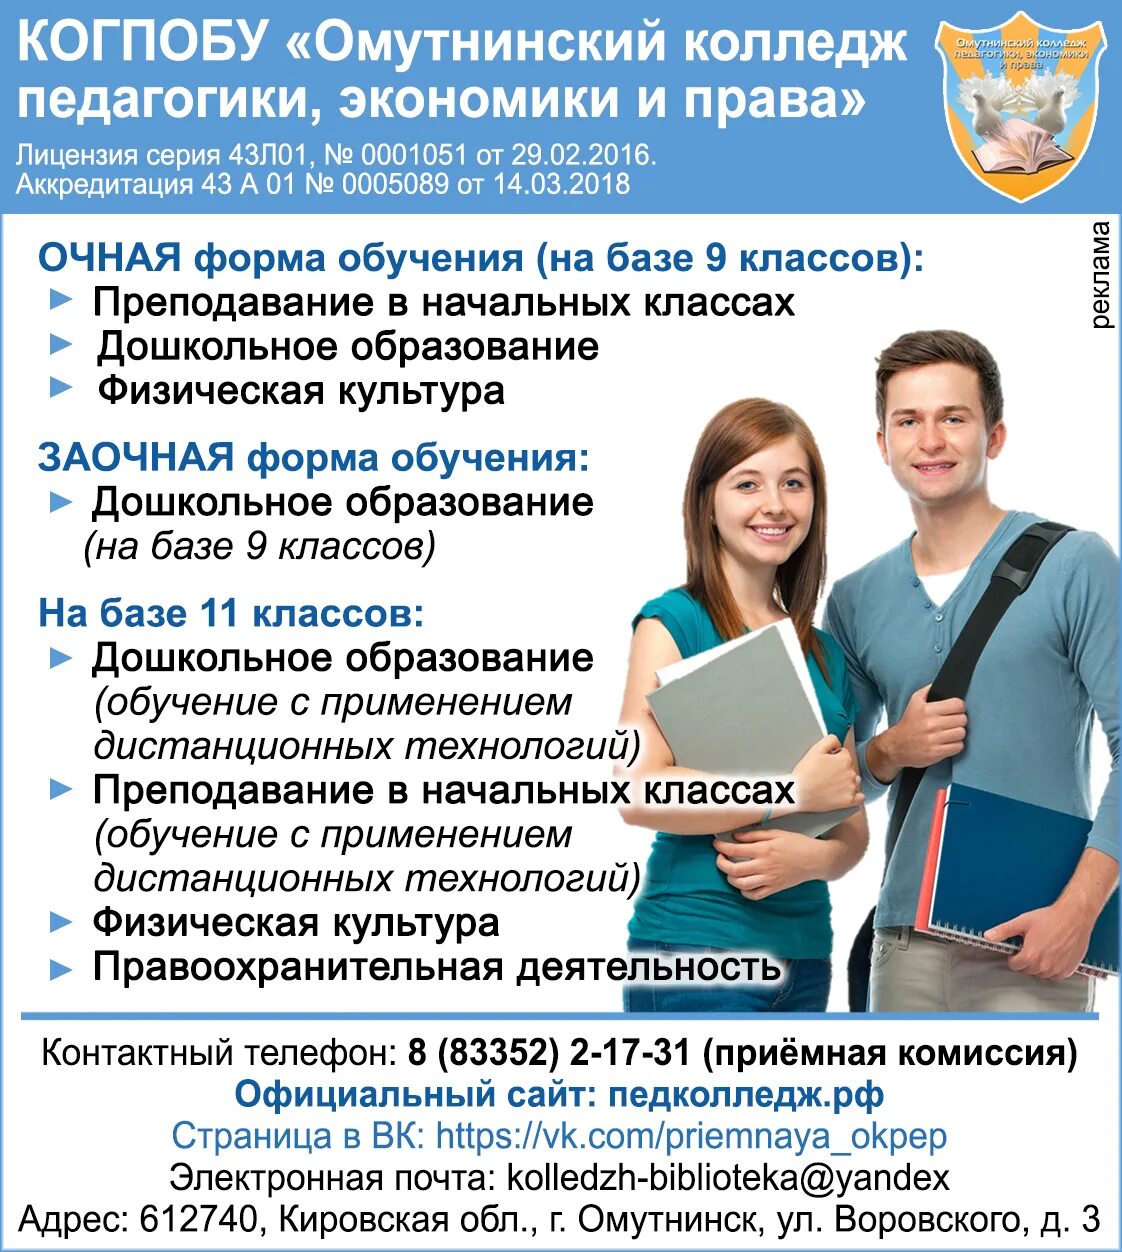 Сайт колледжа приемная комиссия. Педагогический колледж Омутнинск.